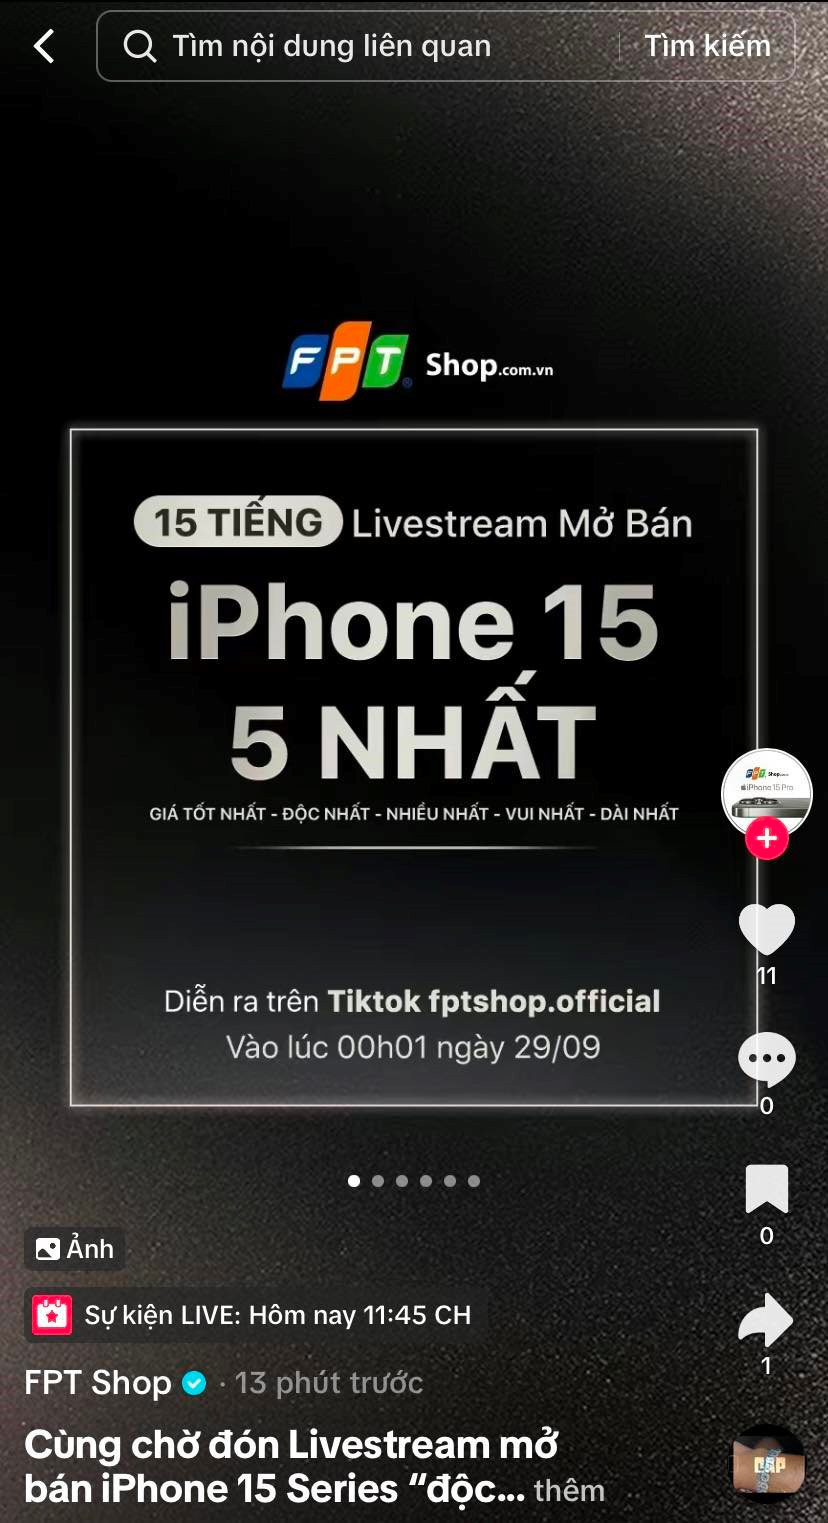 FPT Shop &quot;chơi lớn&quot;: Tuyên bố livestream mở bán online iPhone 15 trên TikTok Shop, liên tục 15 tiếng - Ảnh 1.